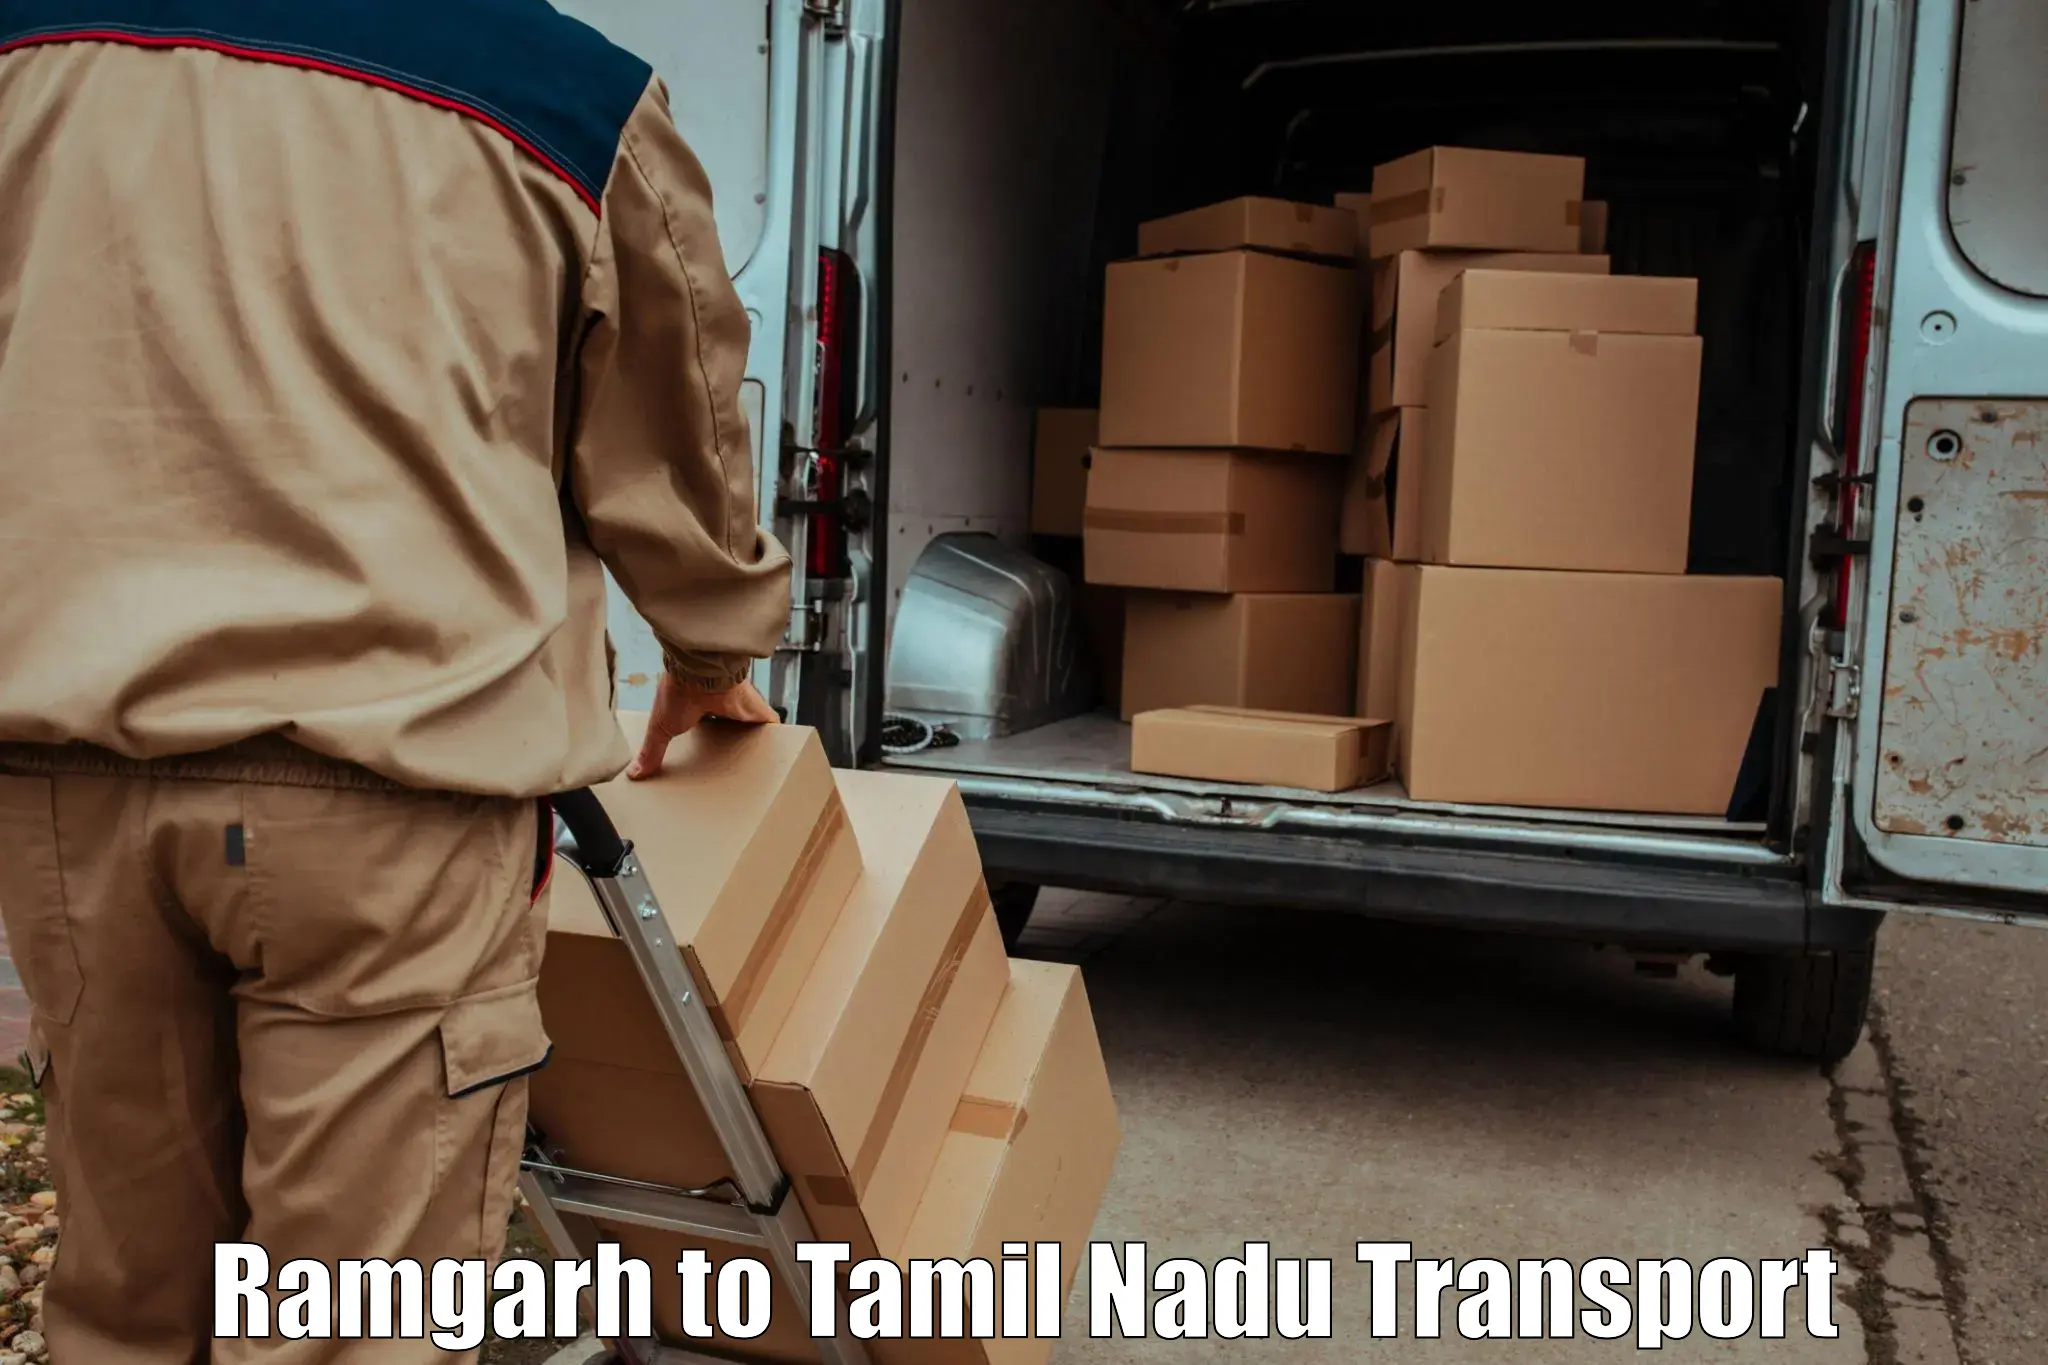 Online transport booking Ramgarh to Narikkudi